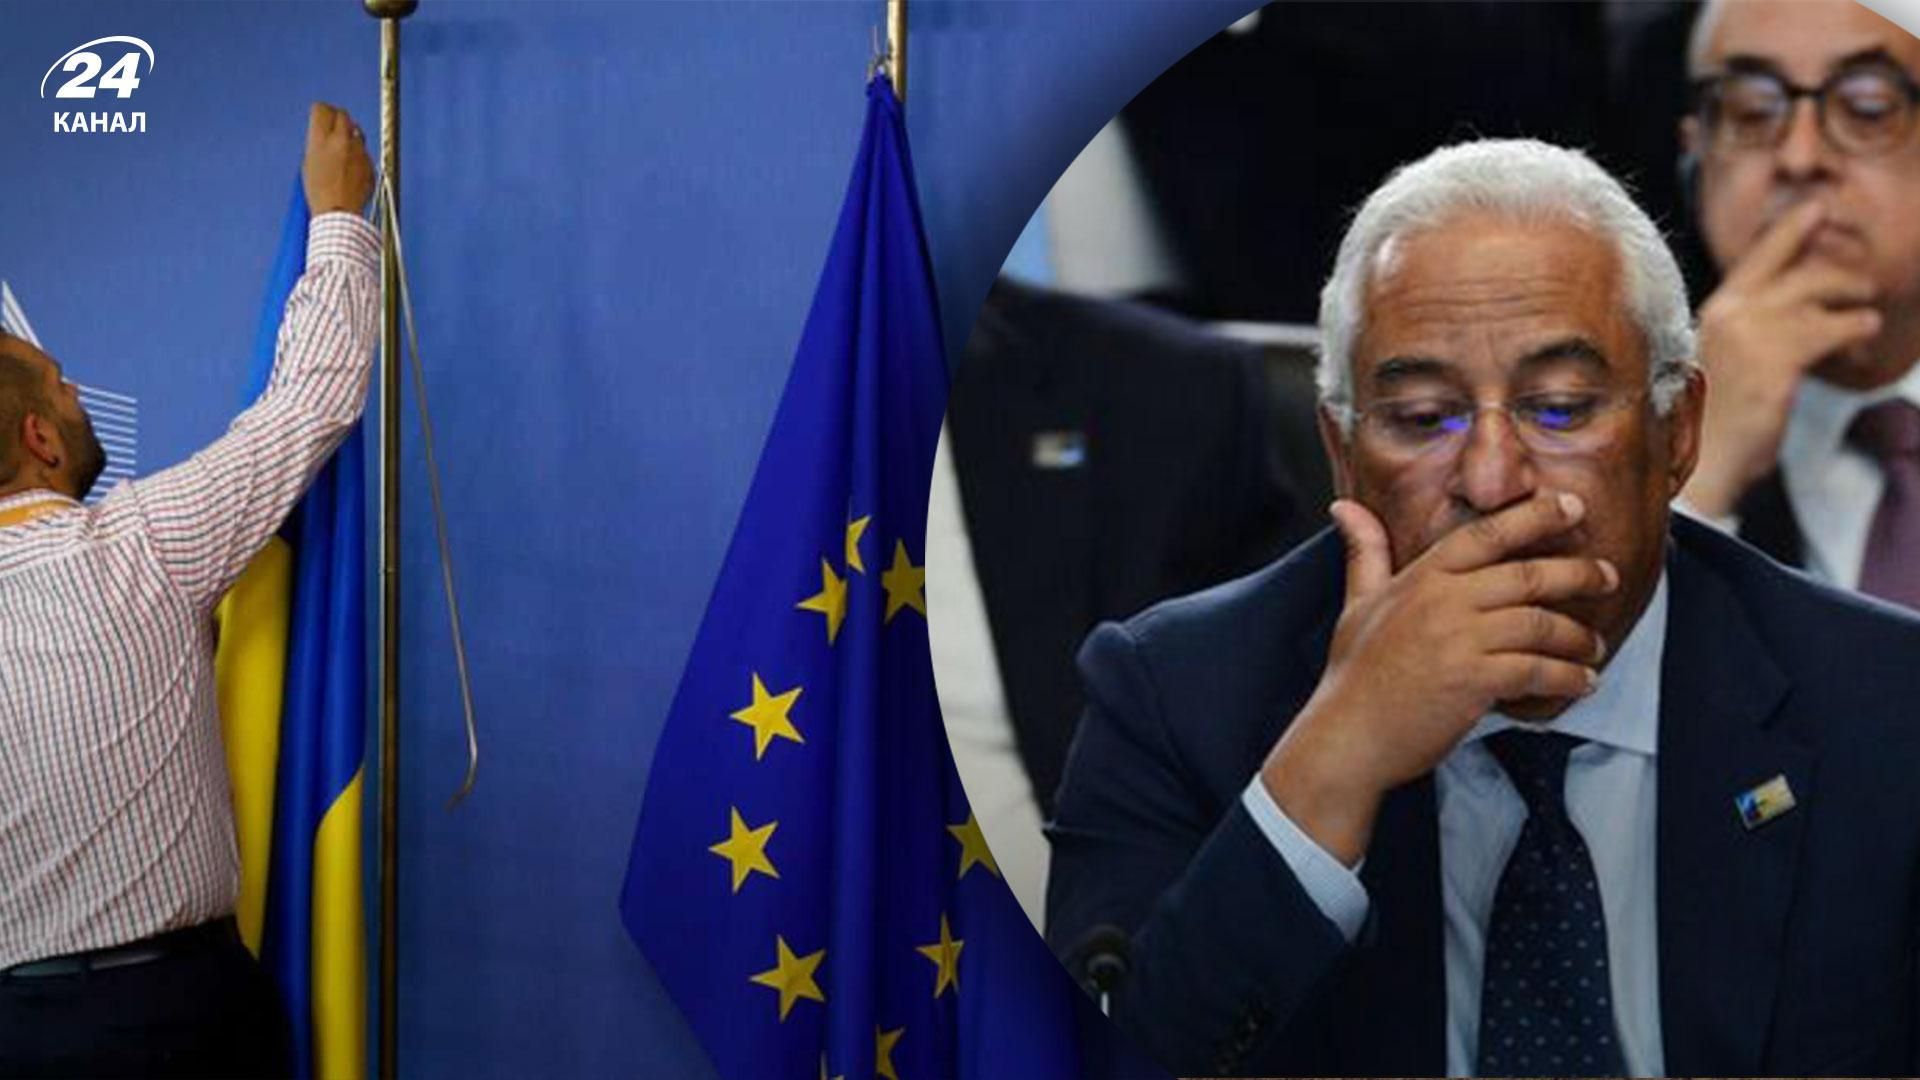 Прем'єр Португалії боїться, що інтеграція України в ЄС може стати пасткою для нашої держави